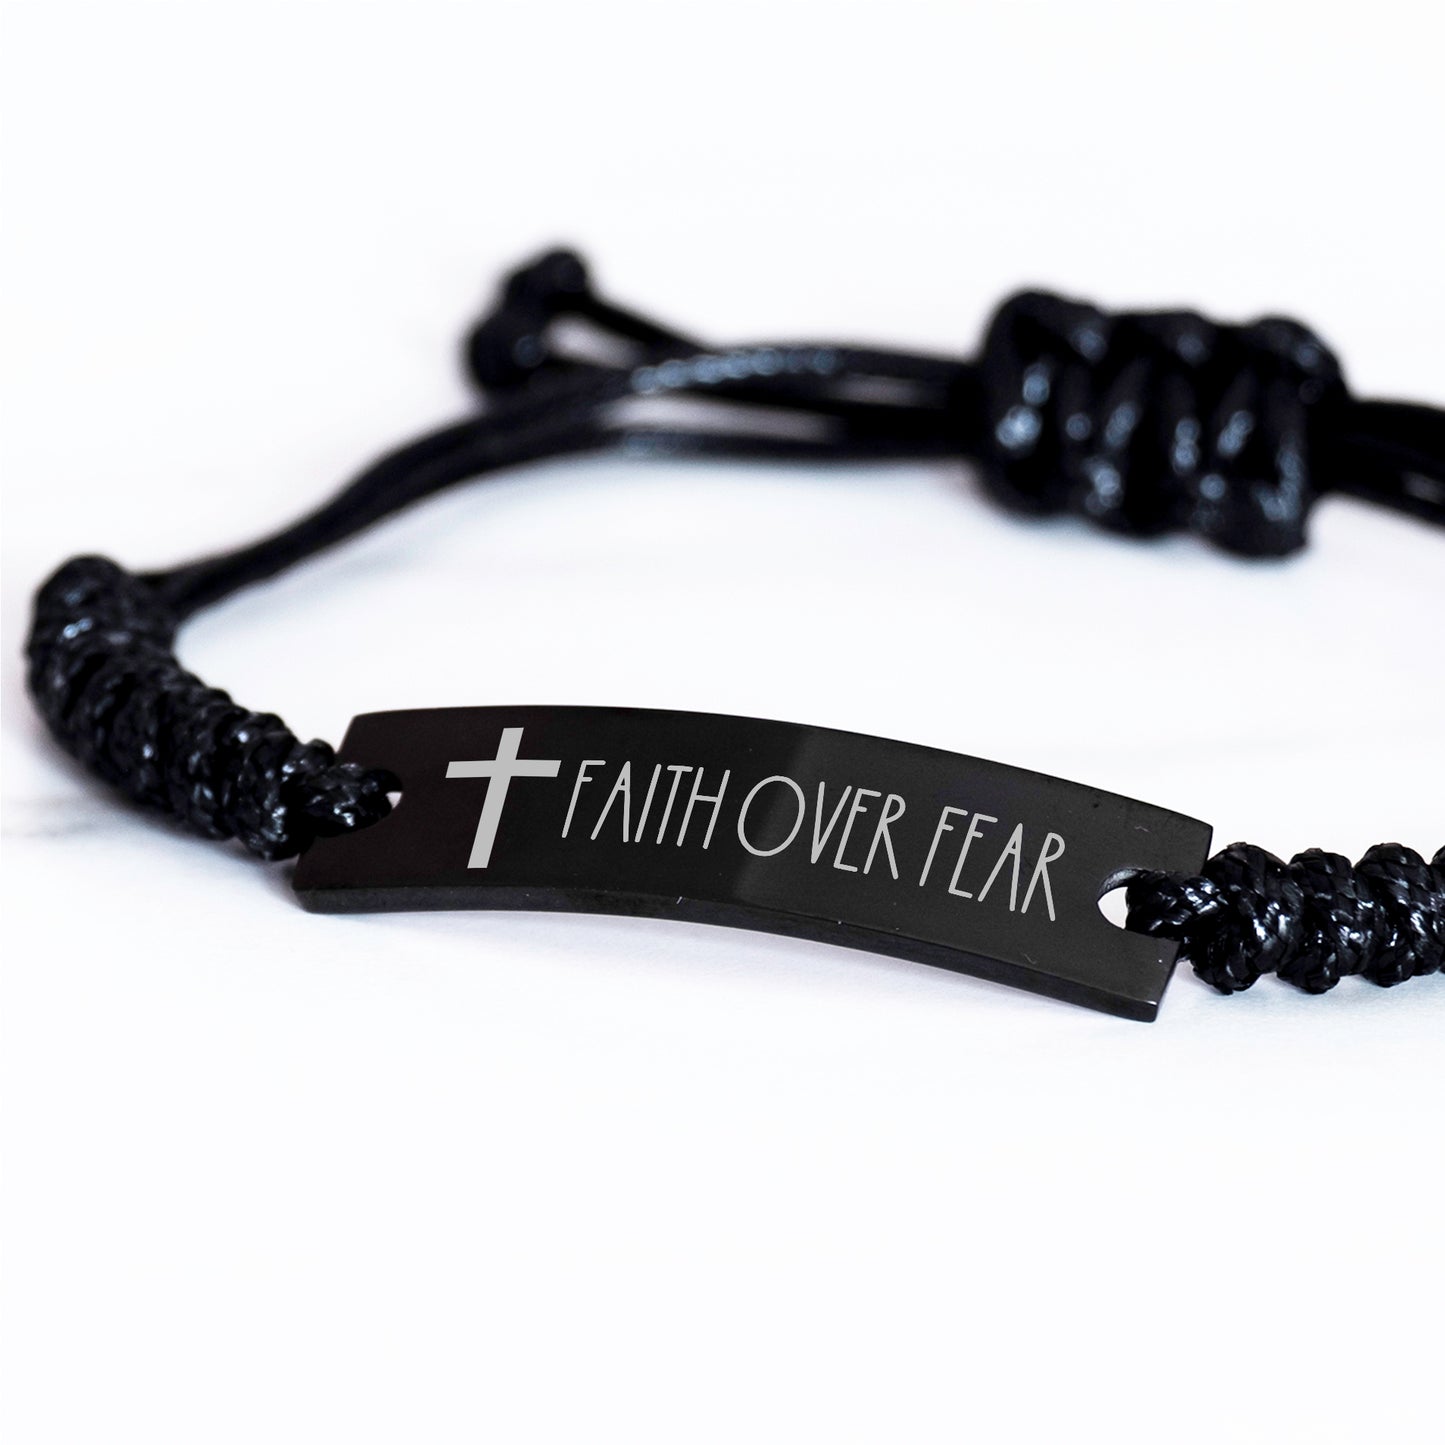 Faith Over Fear Bracelet, Cross Bracelet for Men, Christian Bracelet for Men, Christian Gift, Black Braided Rope Bracelet Gift